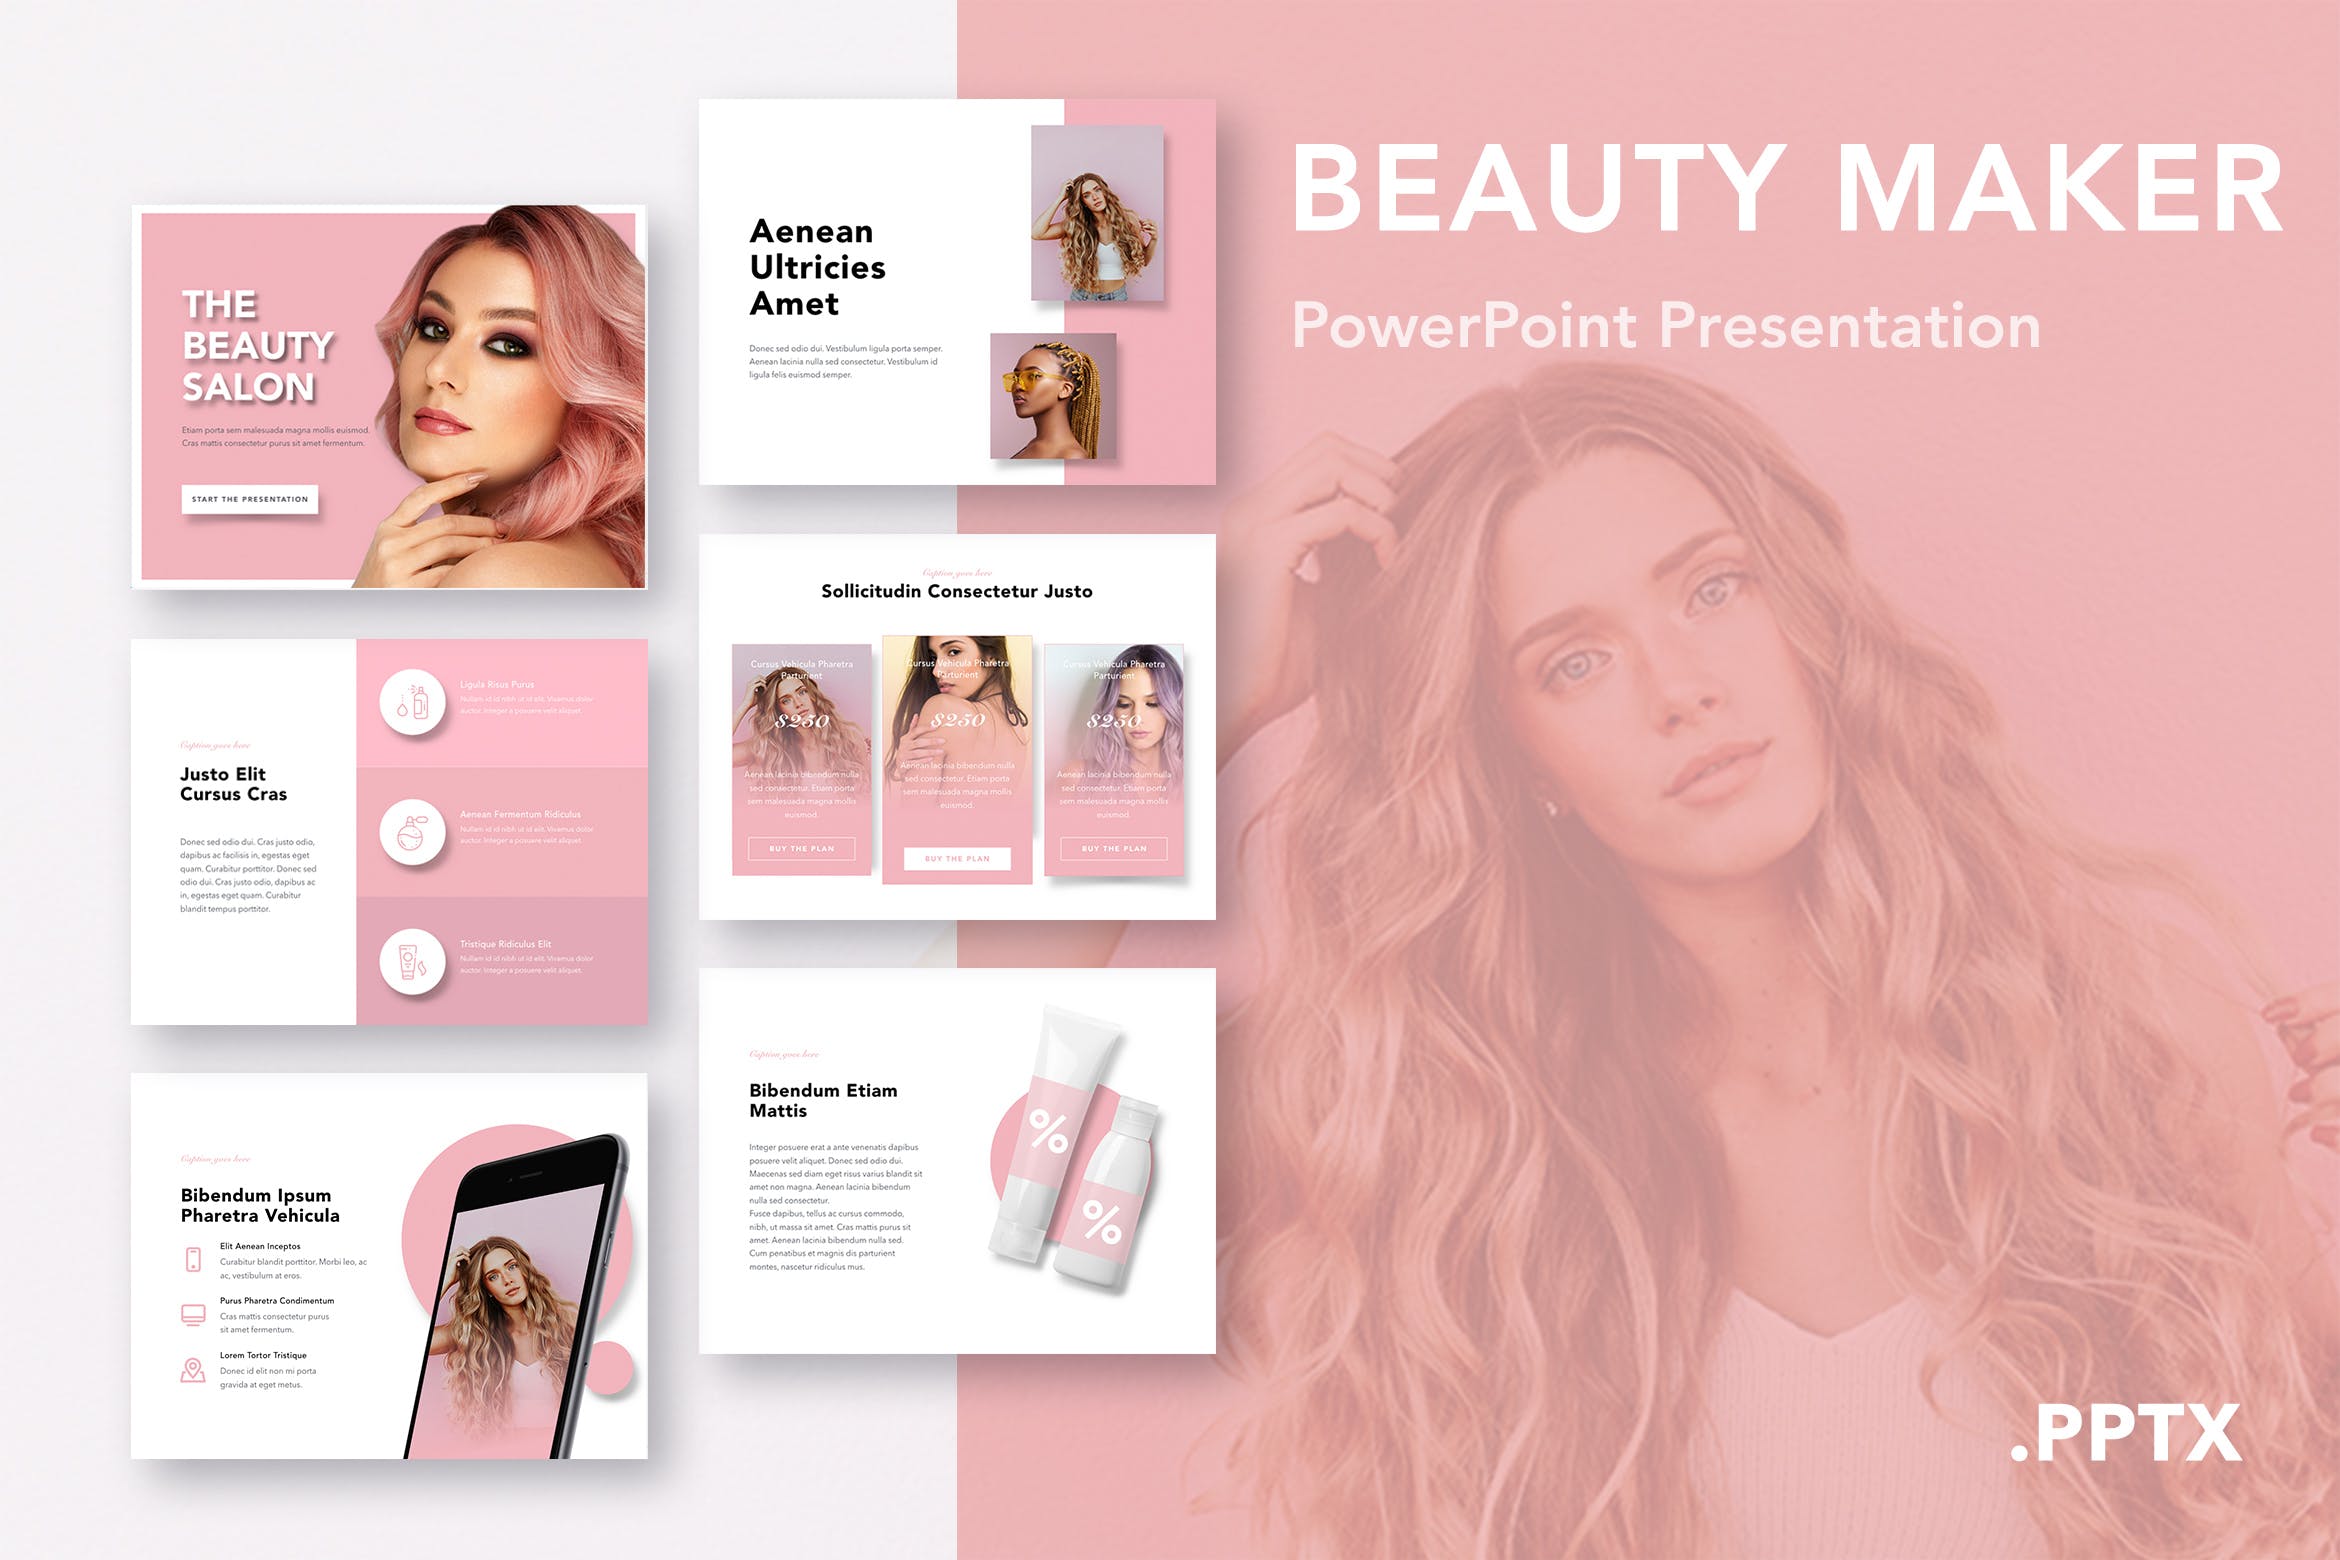 美容化妆主题适用的精美PPT模板下载 Beauty Maker PowerPoint Template插图